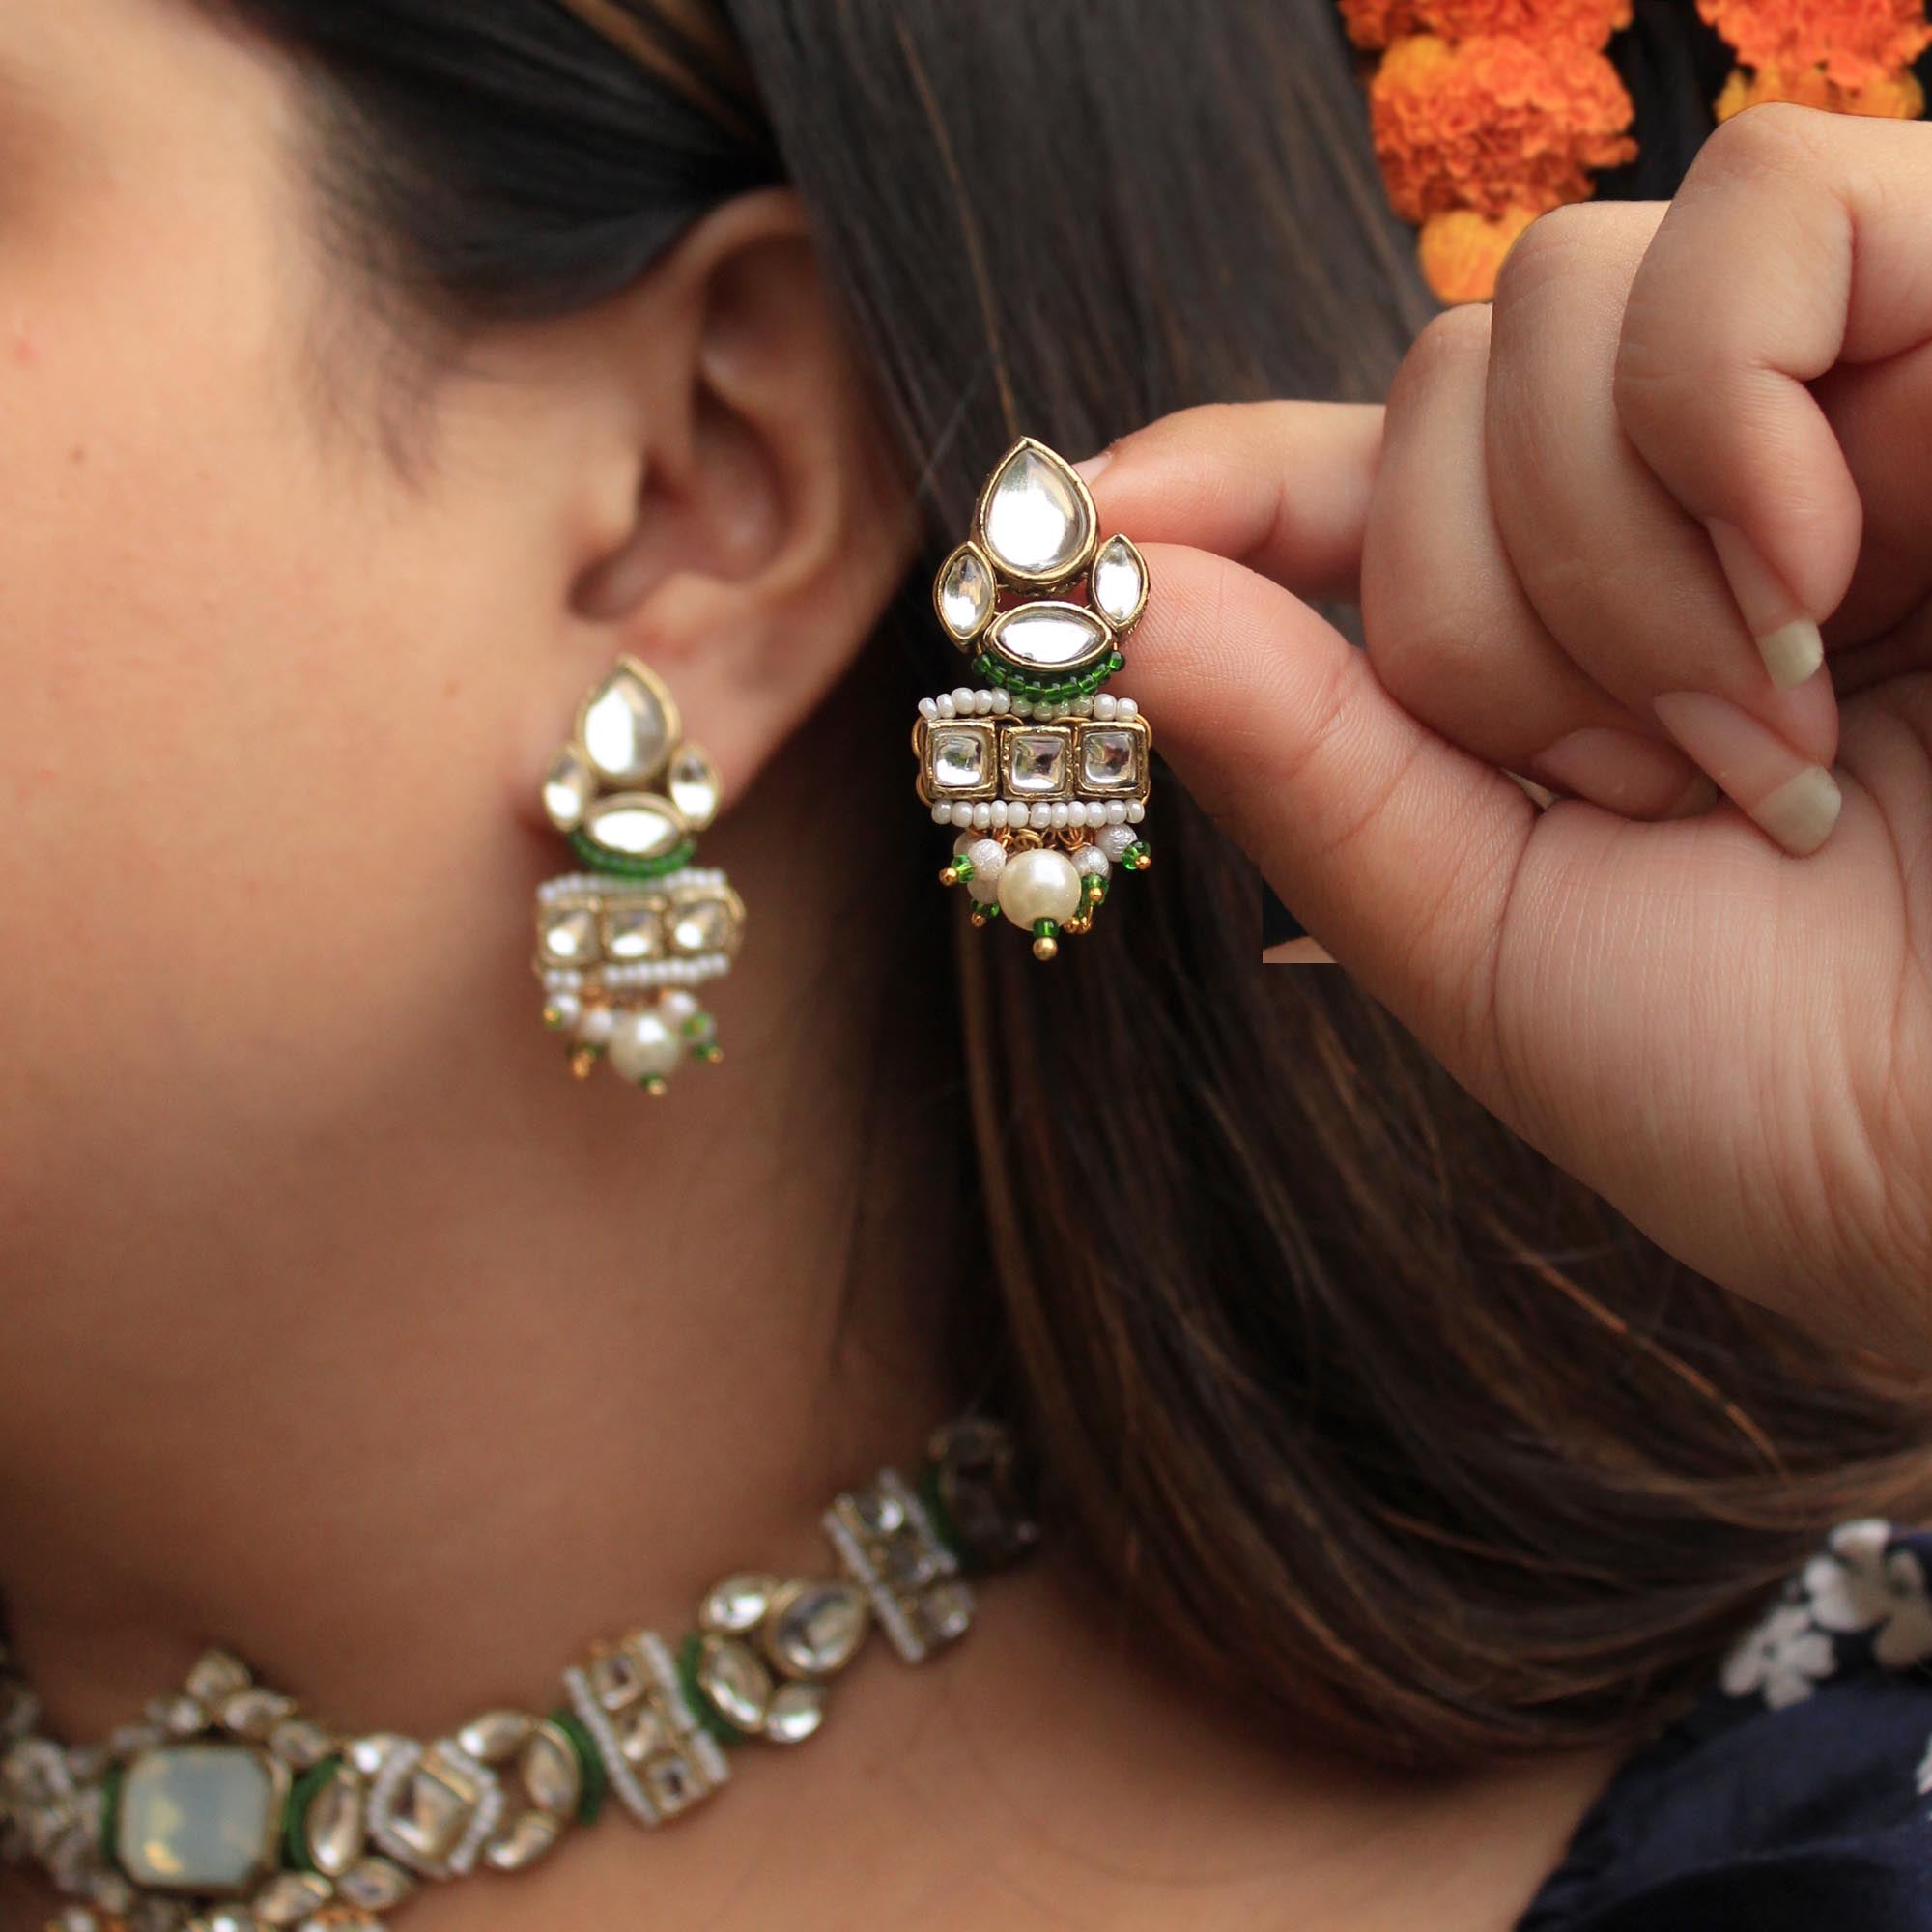 Beabhika Handmade Green Artificial Jewelry Kundan Earrings Golden Earrings Earrings With Pearls Kundan Wedding Jewelry Trendy Earrings Daily Wear Party Wear Traditional Ethnic Dress Jewelry Earrings Bridal Jewelry Set Online Cash On Delivery